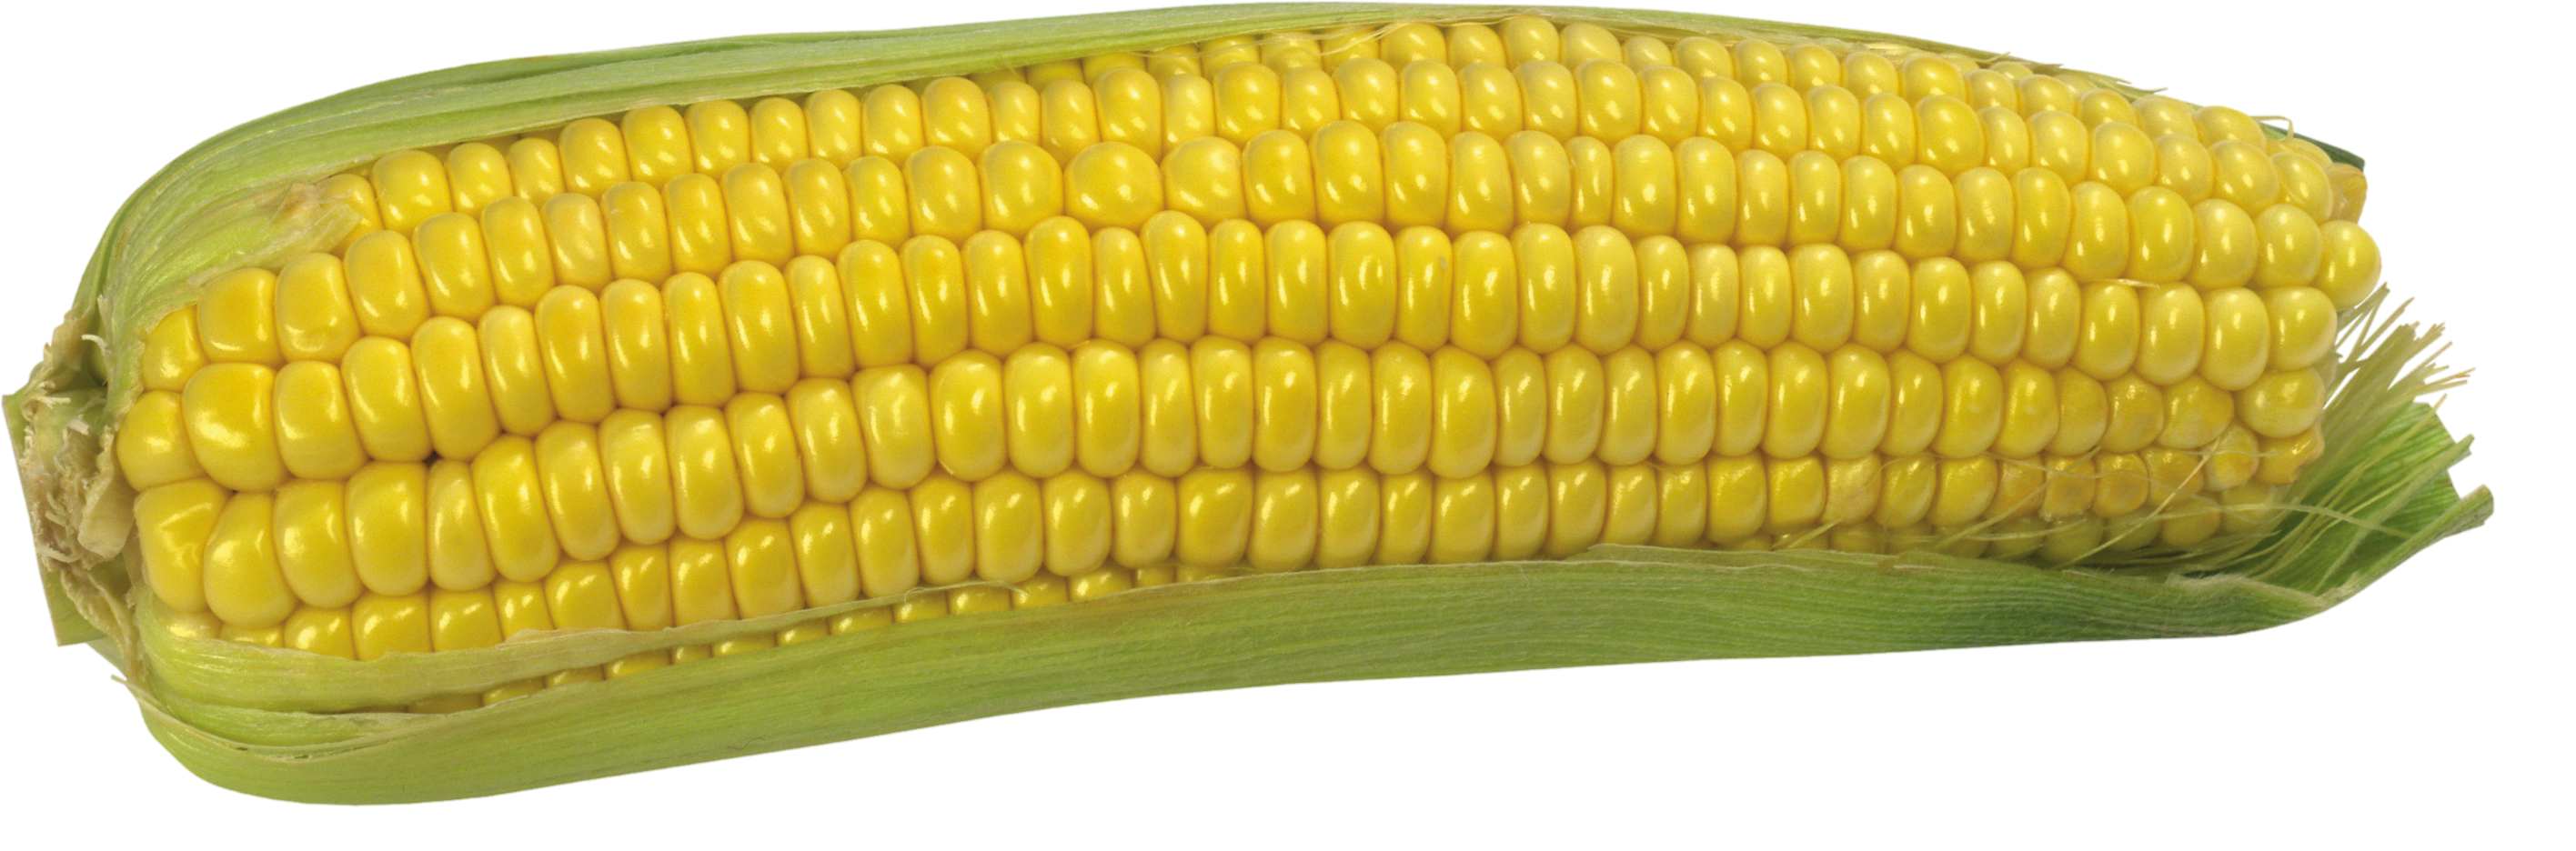 Corn-15